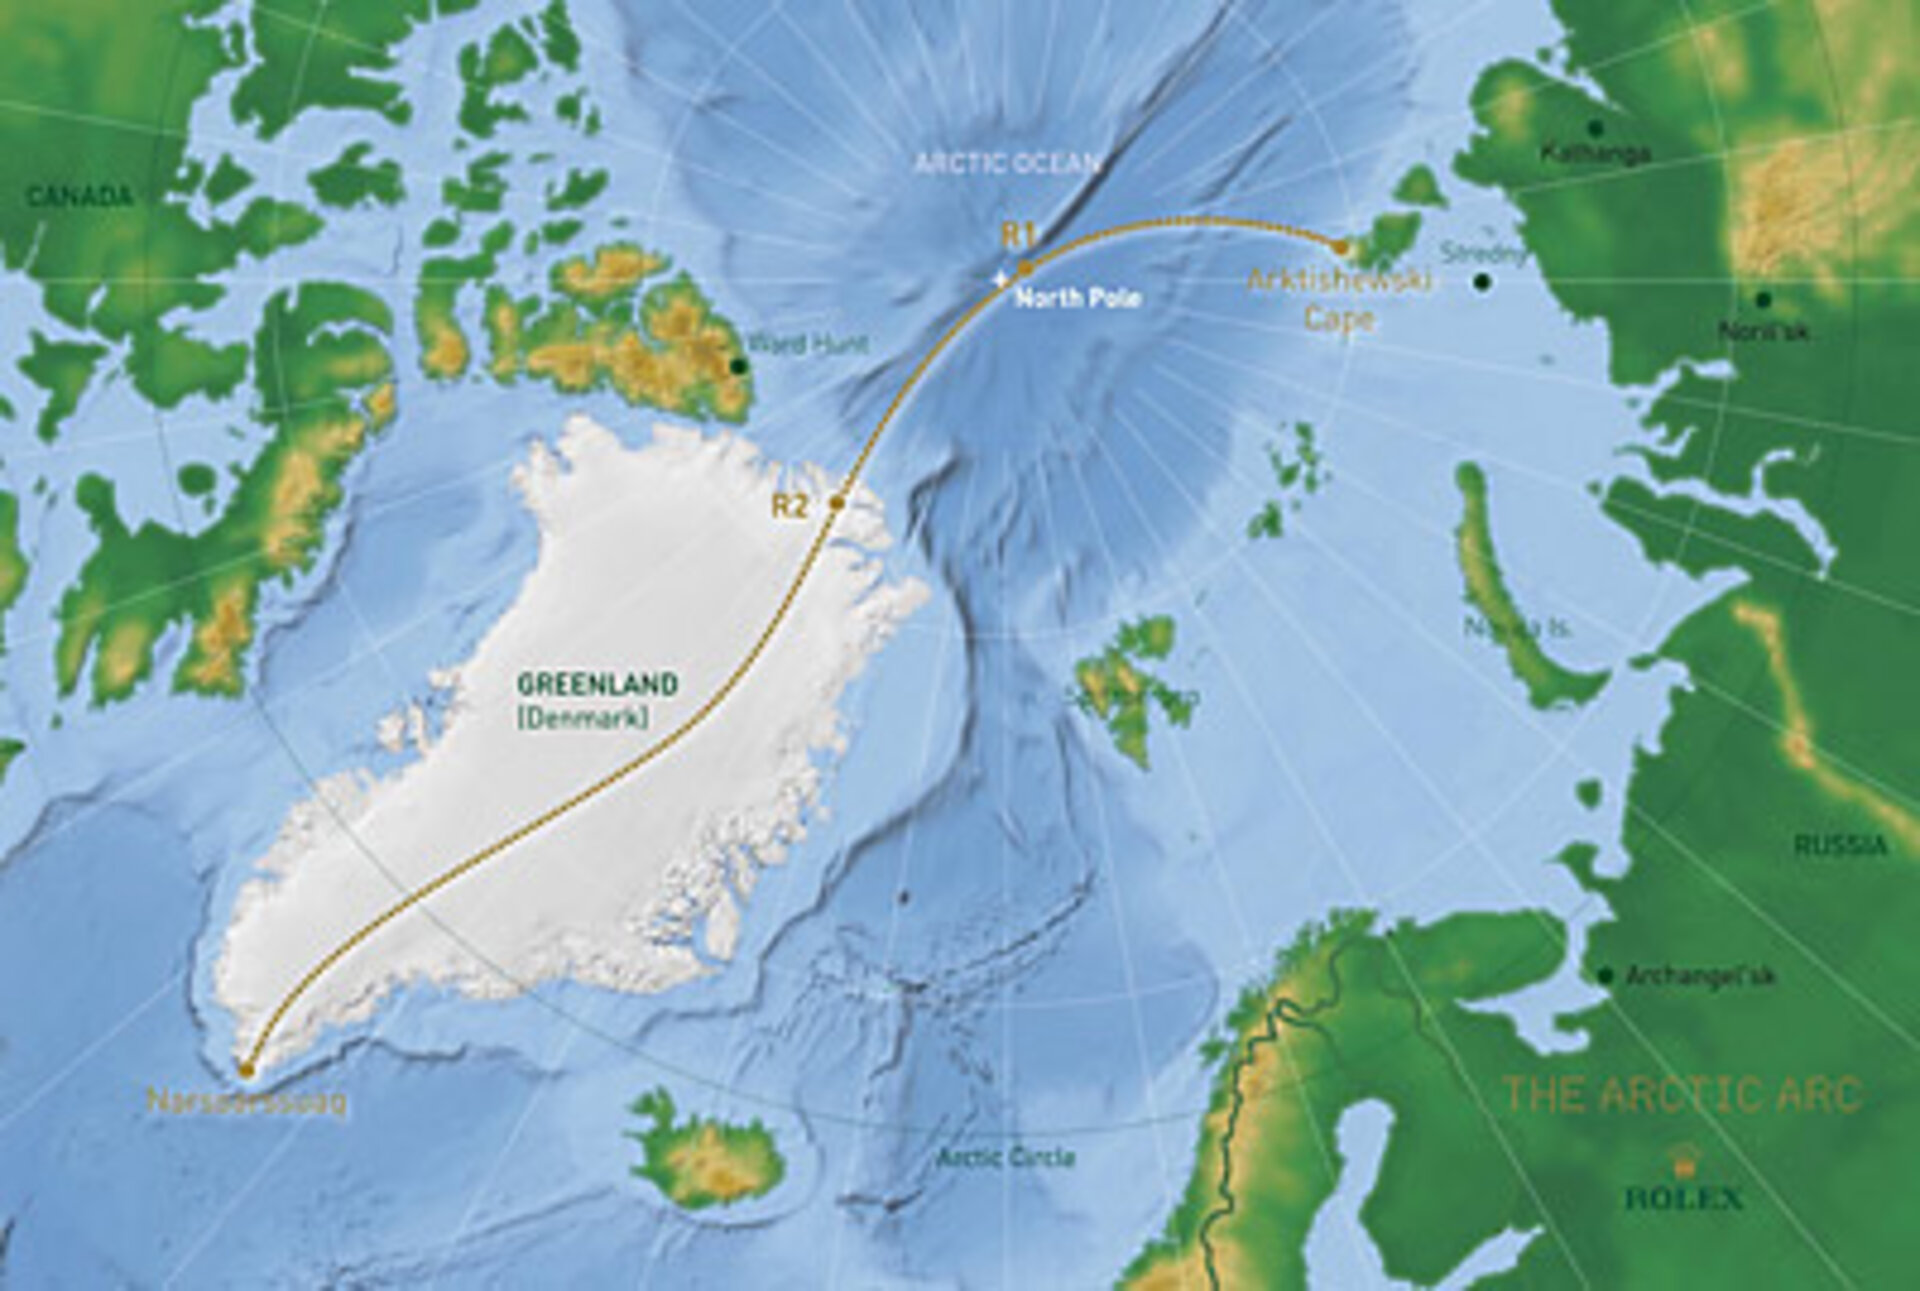 The Arctic Arc, un long et audacieux périple au Pôle Nord